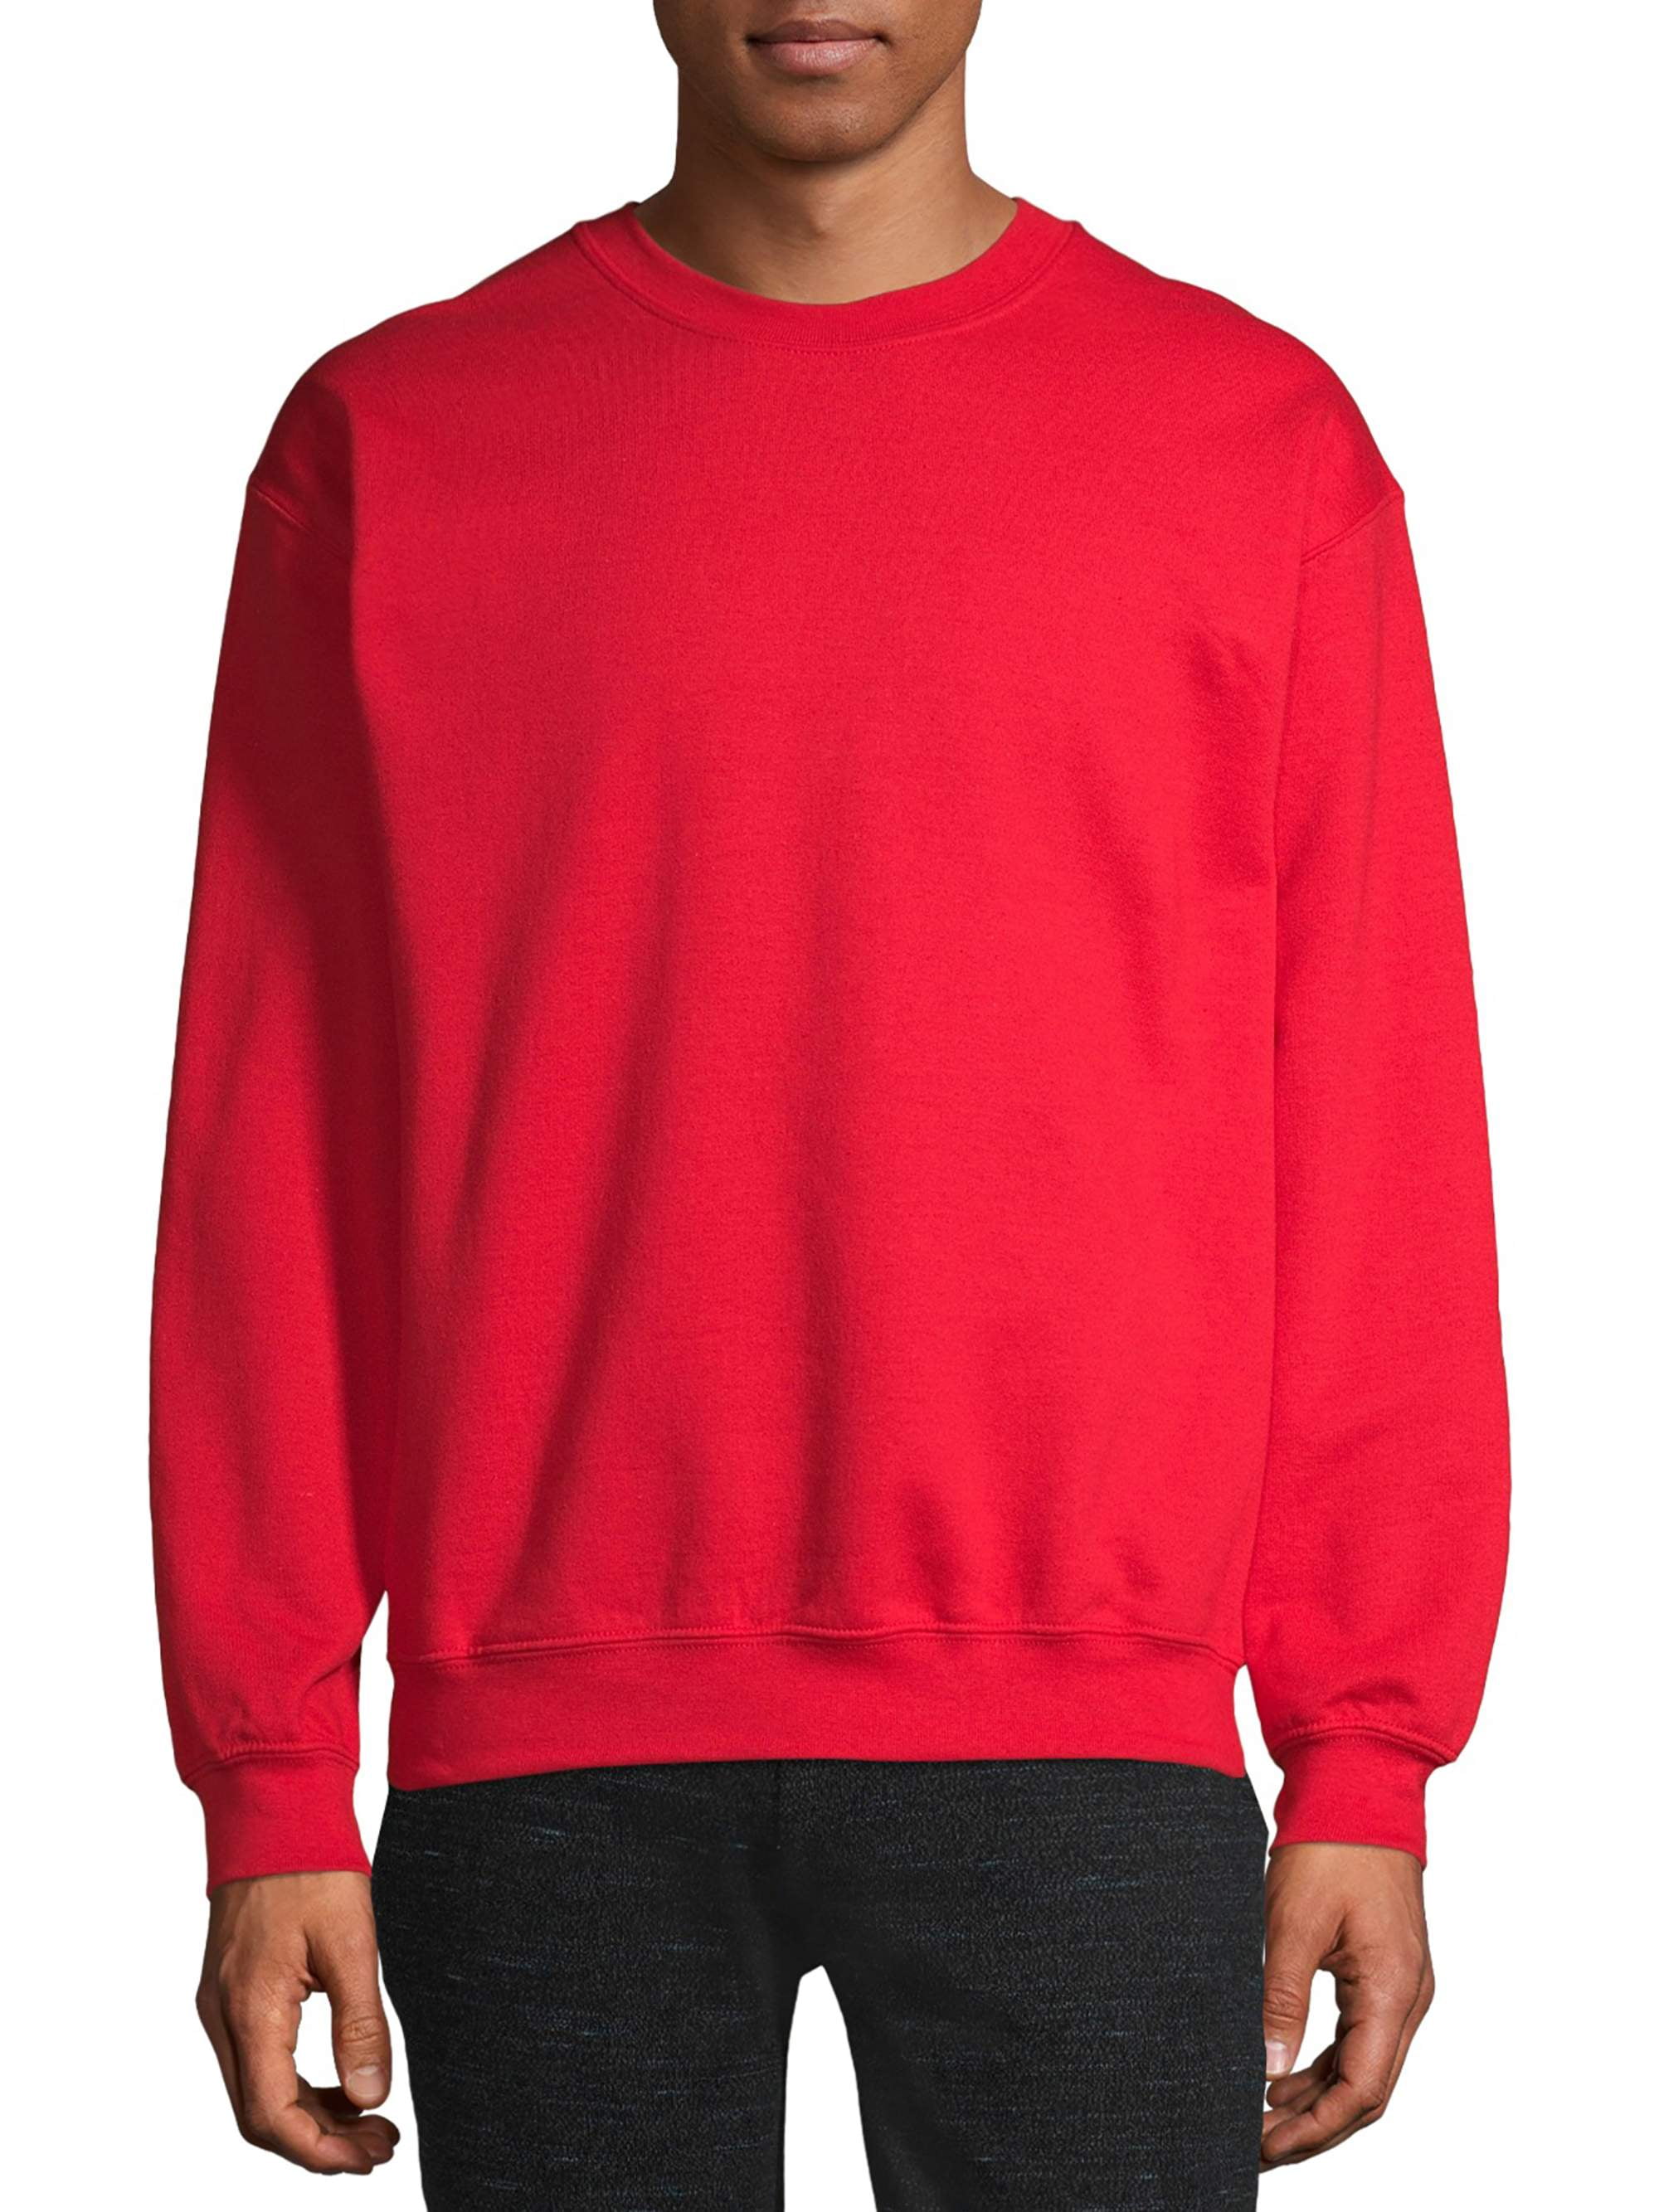 Gildan Men's Fleece Crewneck Sweatshirt - Walmart.com